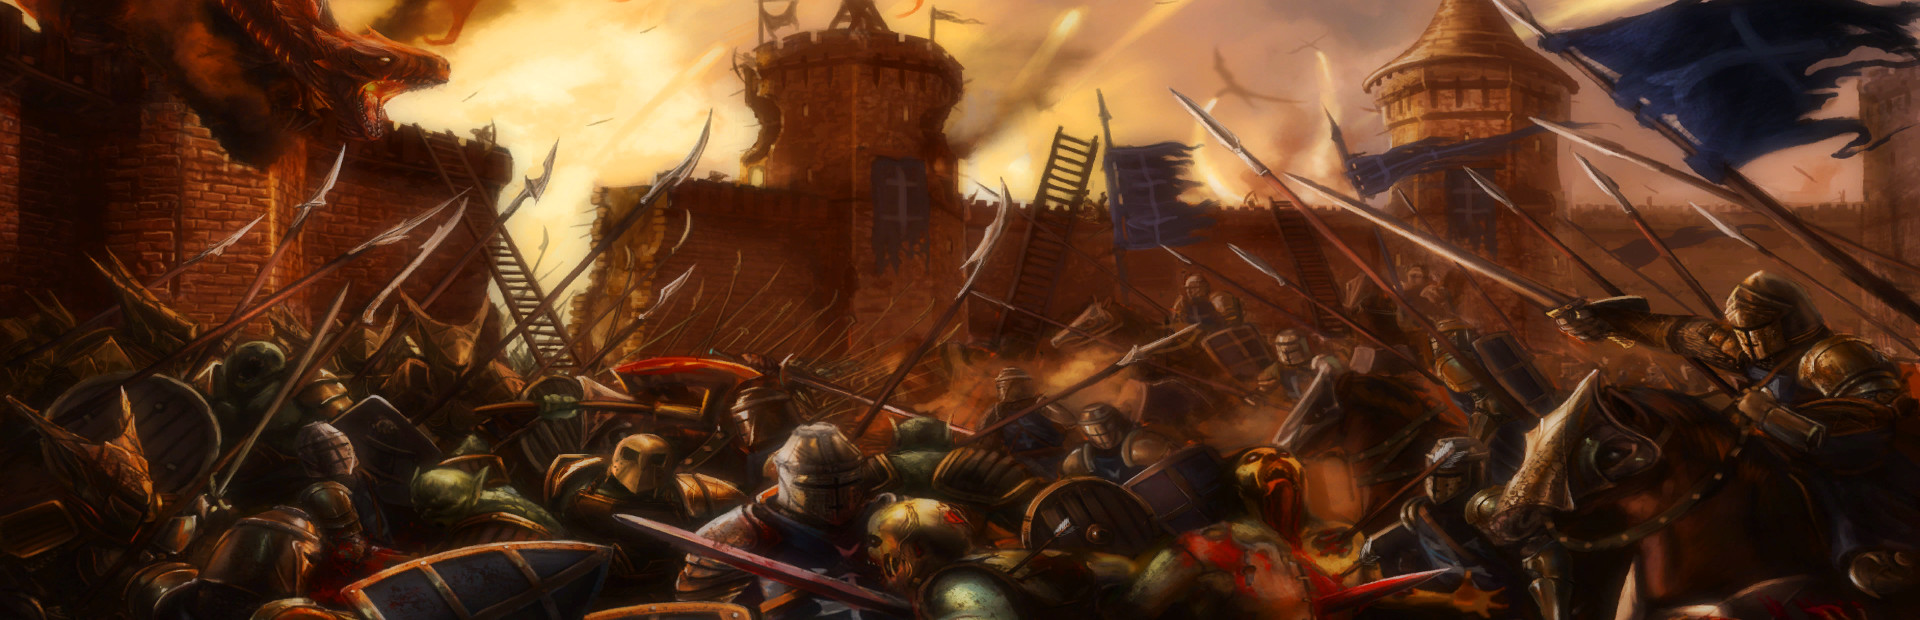 Kingdom Wars 2: Battles cover image